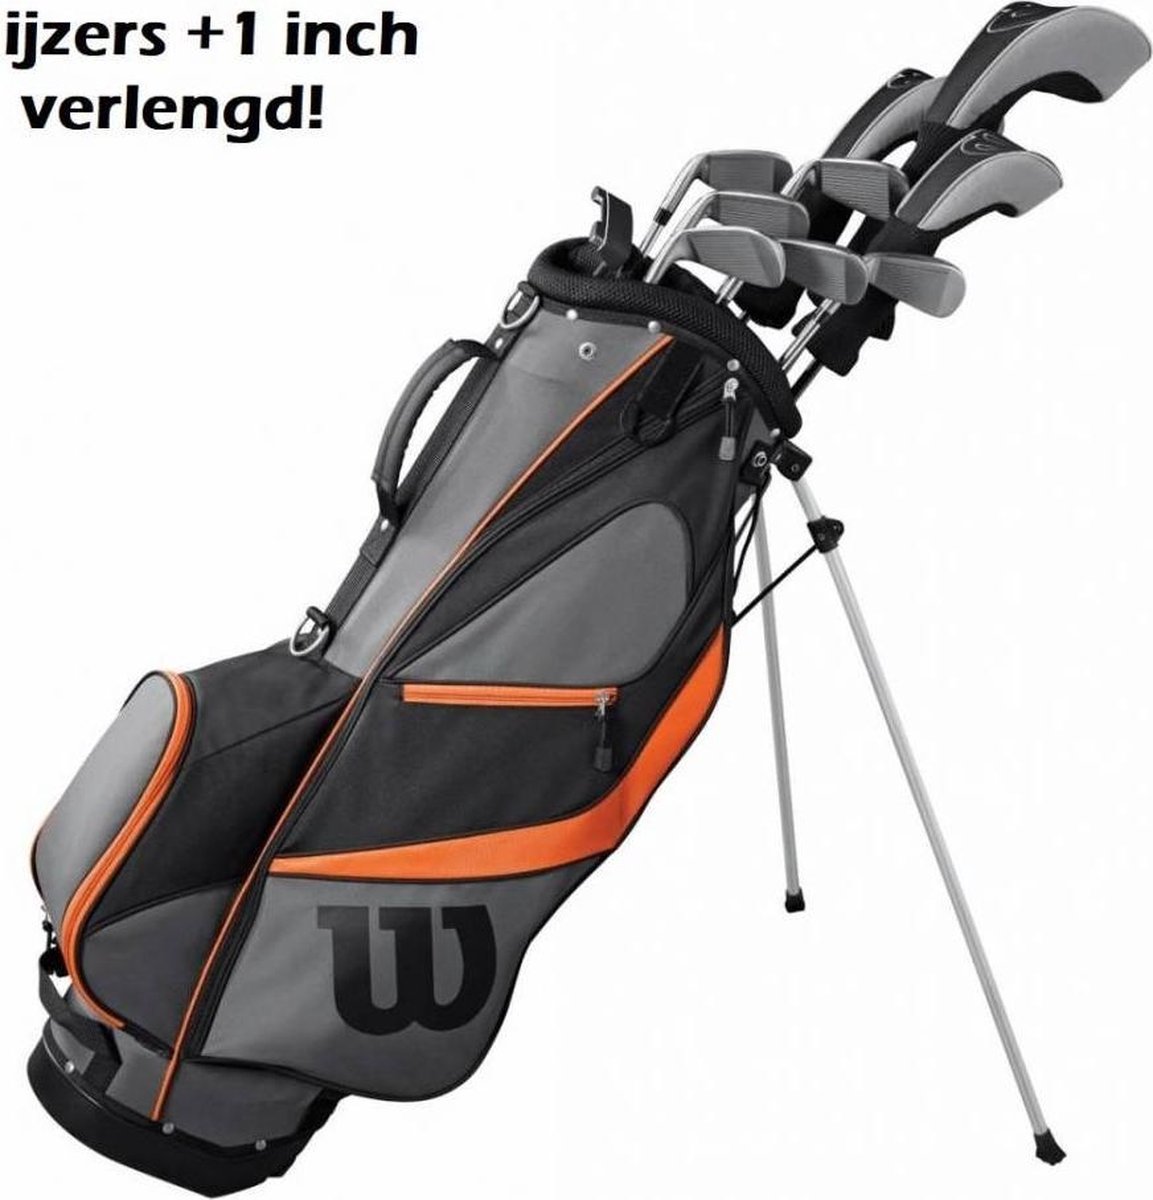 Voorkeur Geld lenende IJver X31 Complete 14-delige Golfset +1 Inch Verlengd 2019 (steel shaft) | bol.com